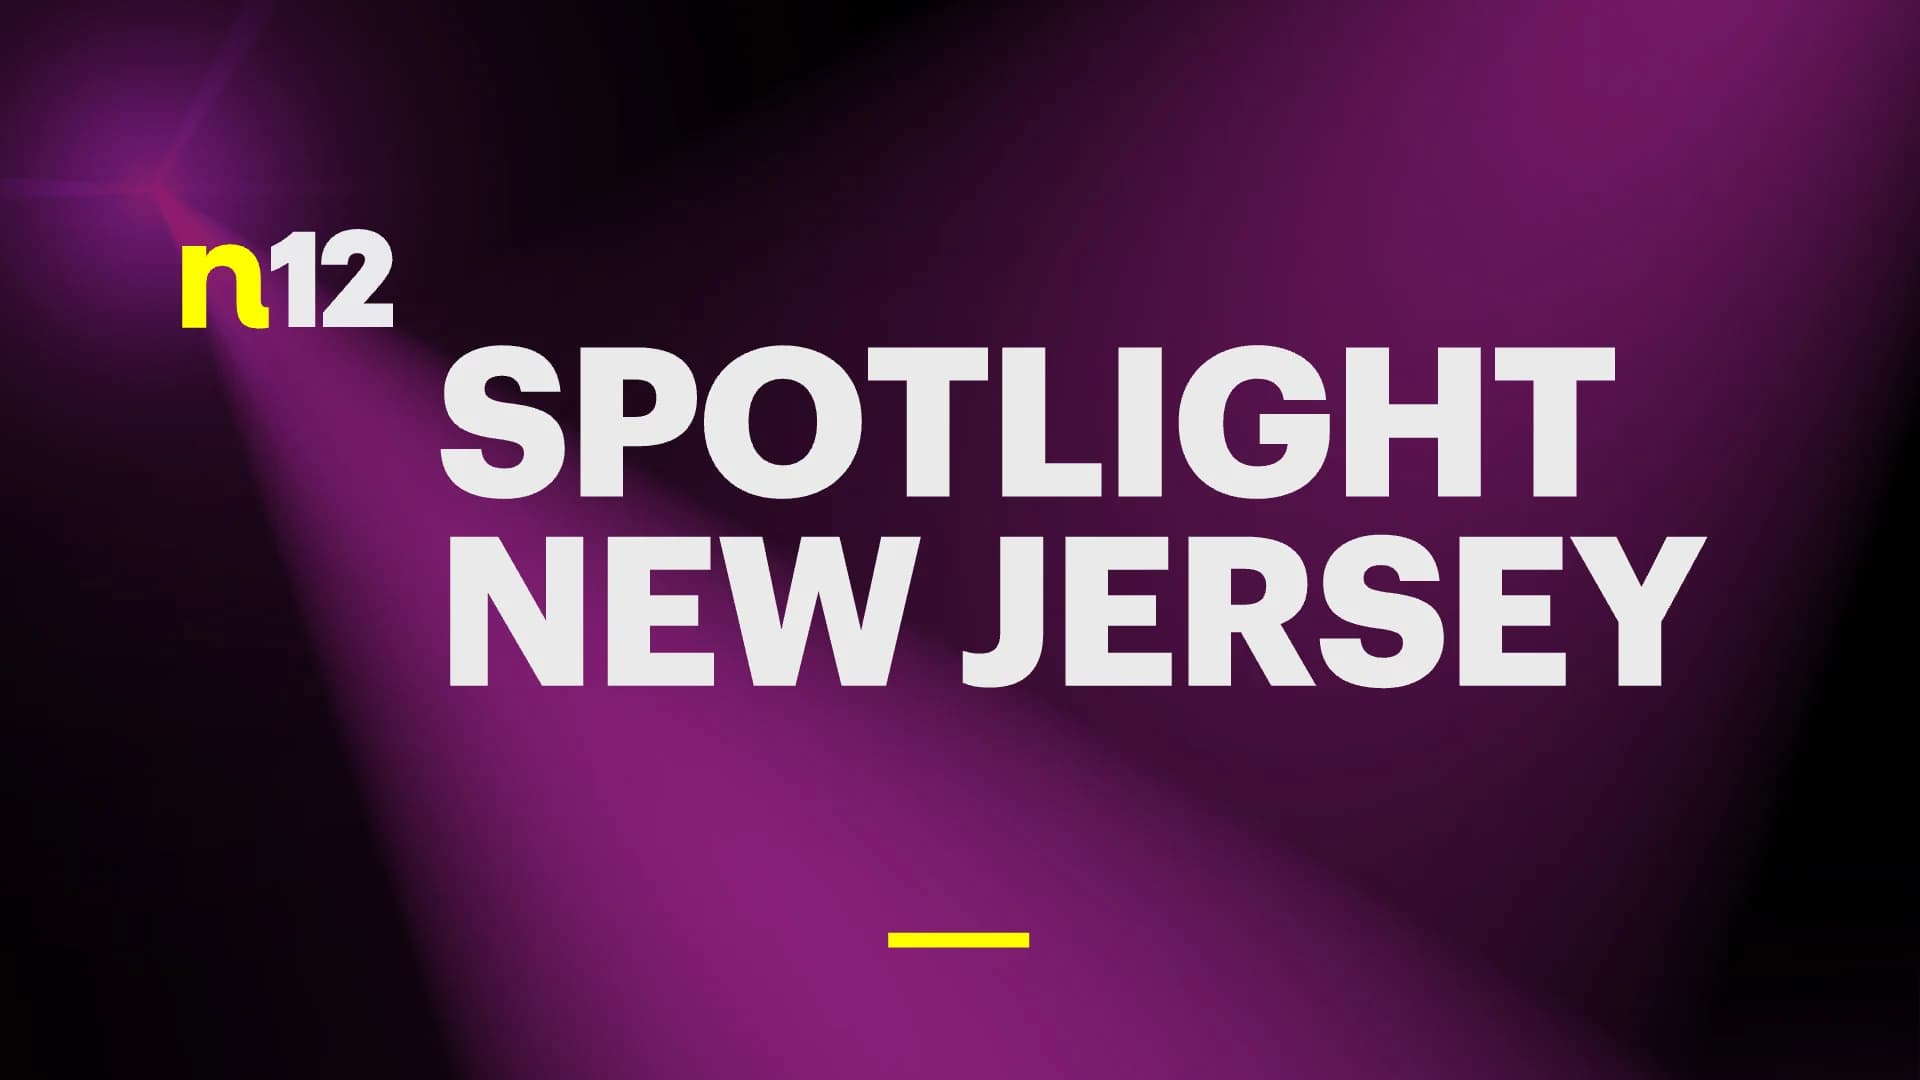 2019 Spotlight New Jersey - Information